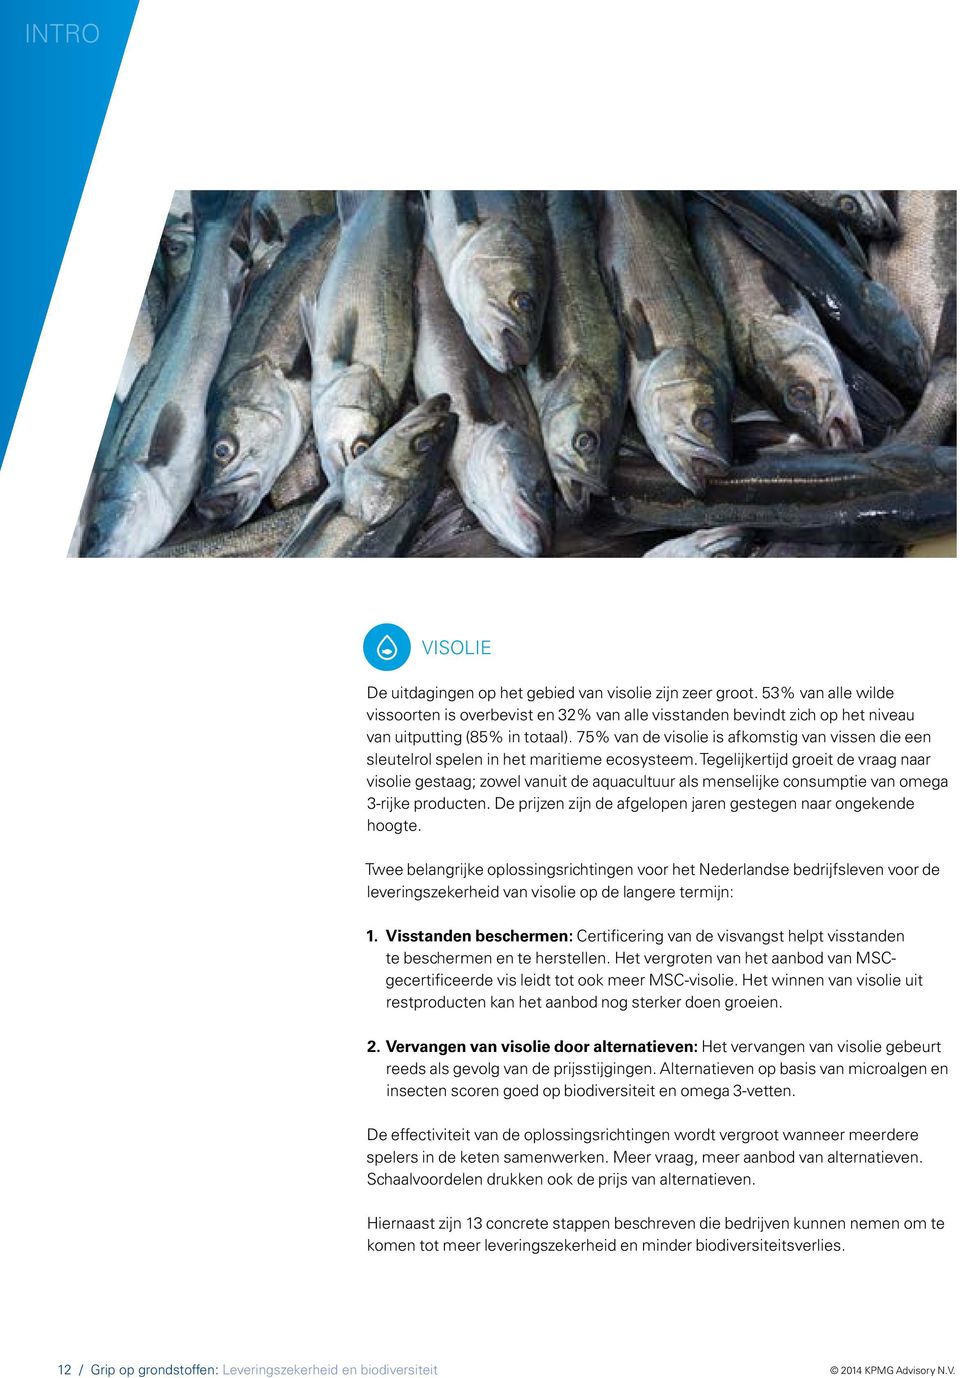 75% van de visolie is afkomstig van vissen die een sleutelrol spelen in het maritieme ecosysteem.